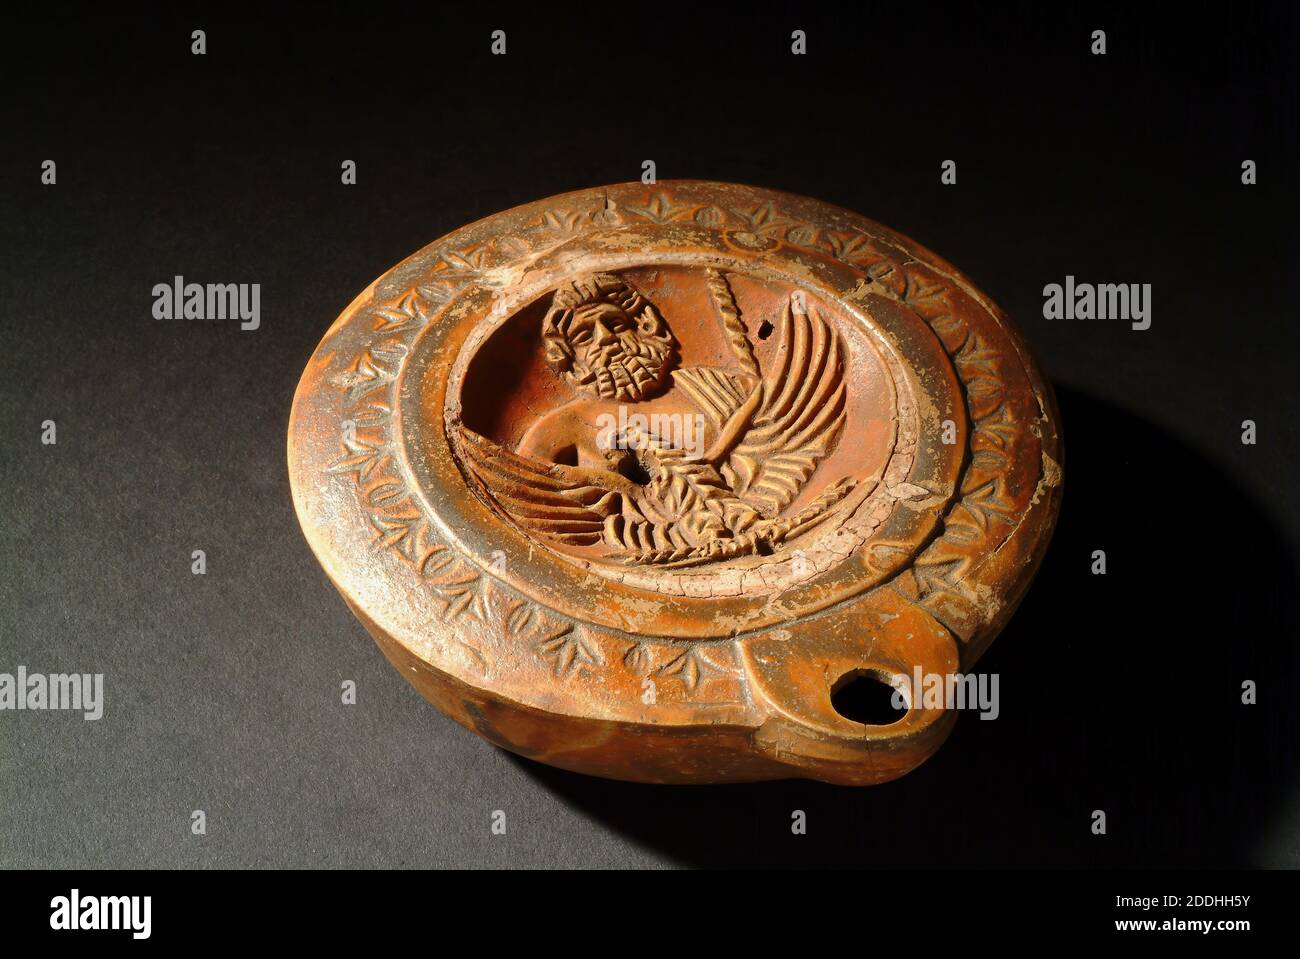 Lampe de poterie décorée de buste de Zeus avec son aigle, ses griffes saisissant un boulon de tonnerre, céramique, romain classique, lampe, Antiquités, civilisations anciennes Banque D'Images